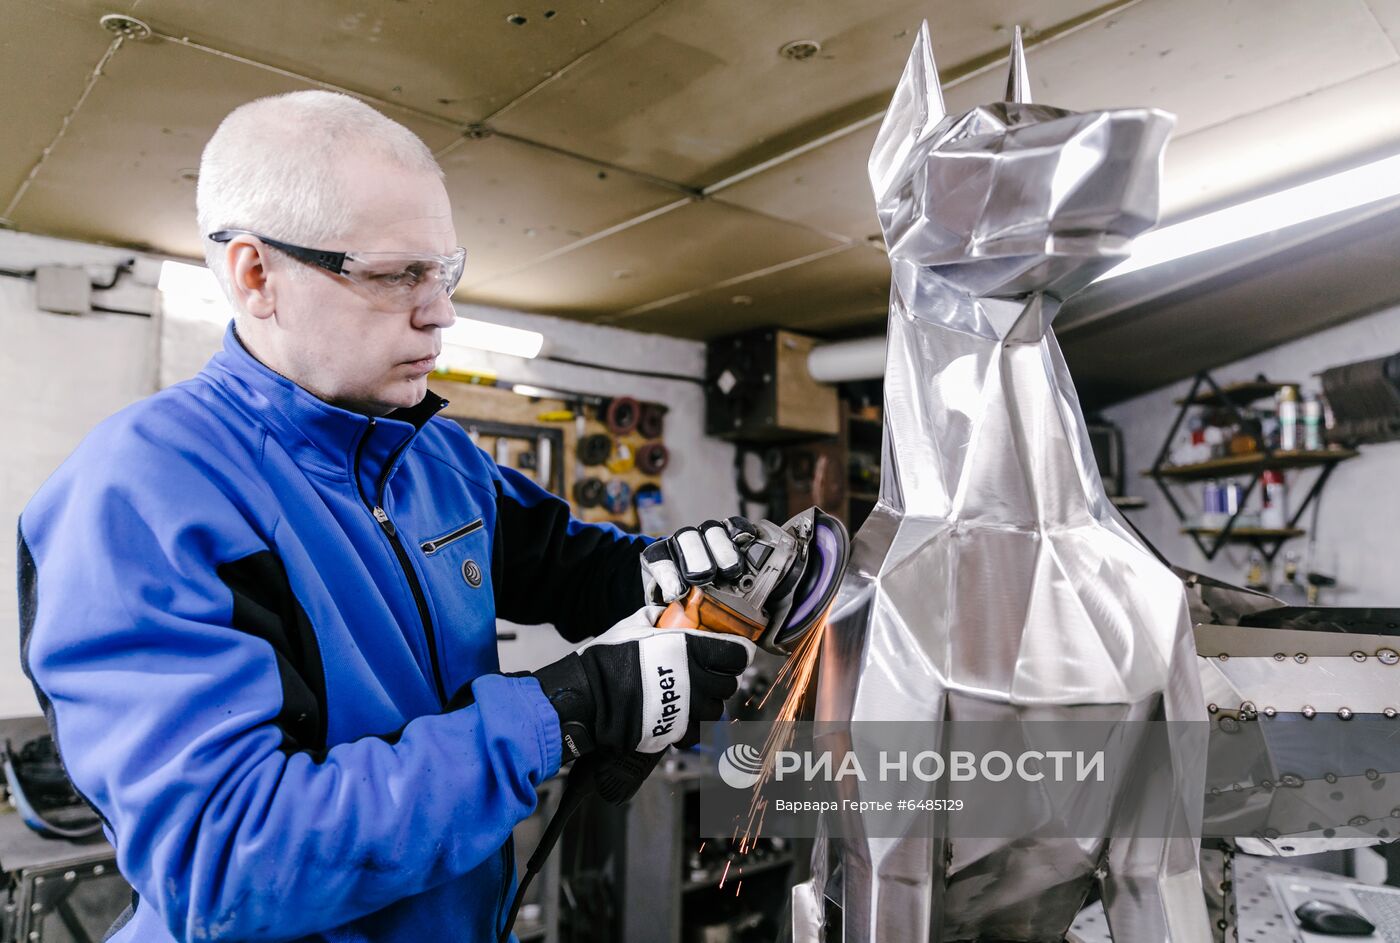 Изготовление полигональных фигур из металла в Иваново